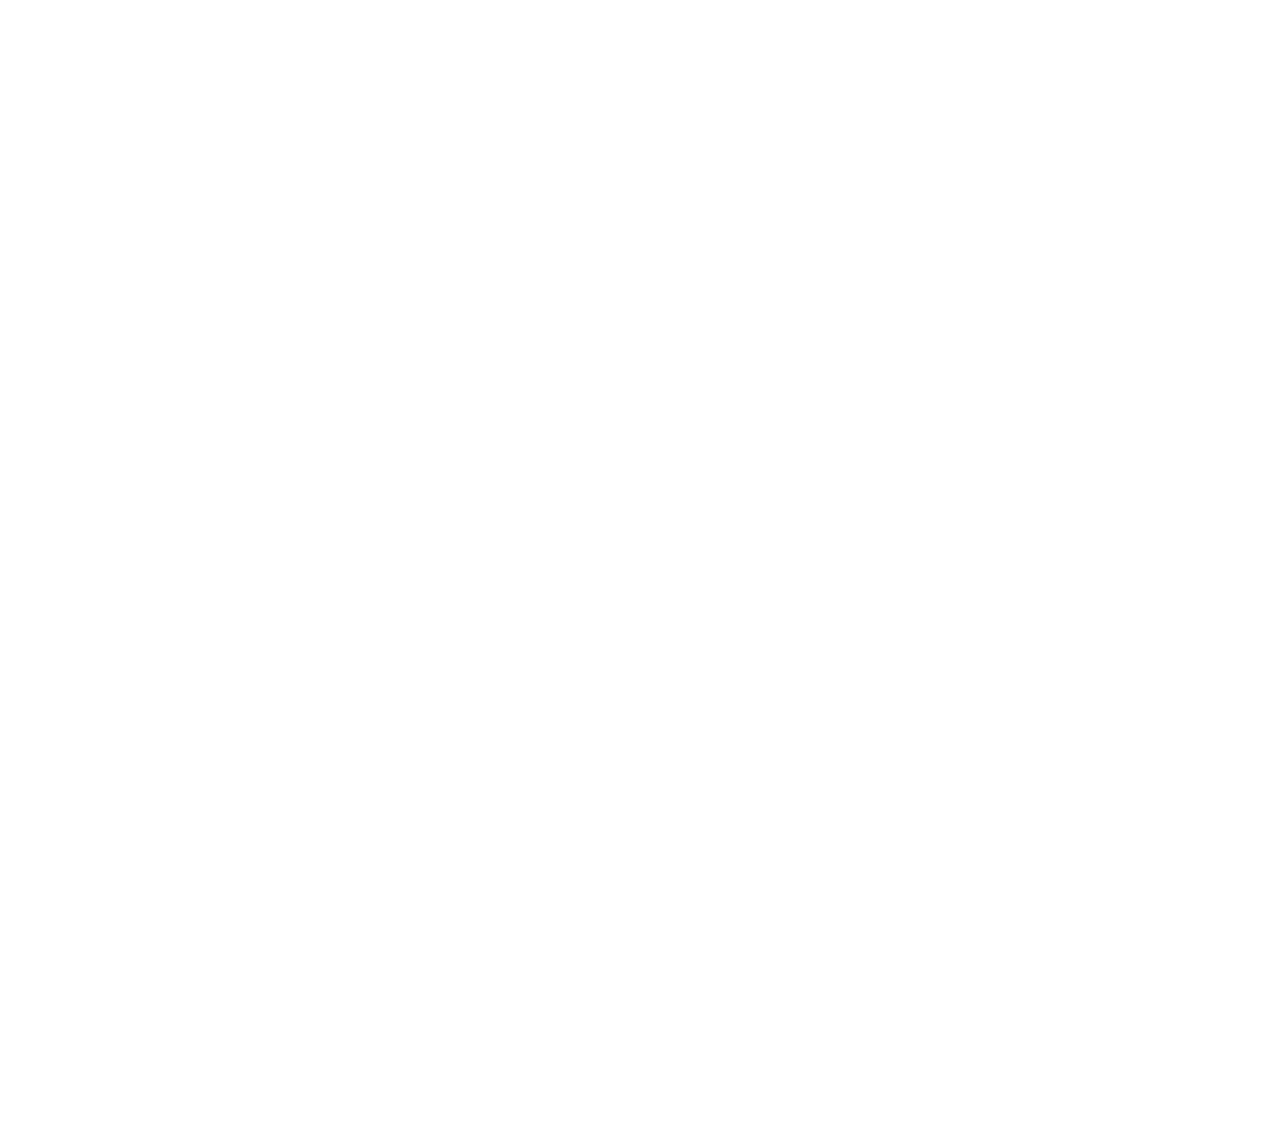 Legacy Fund Logo